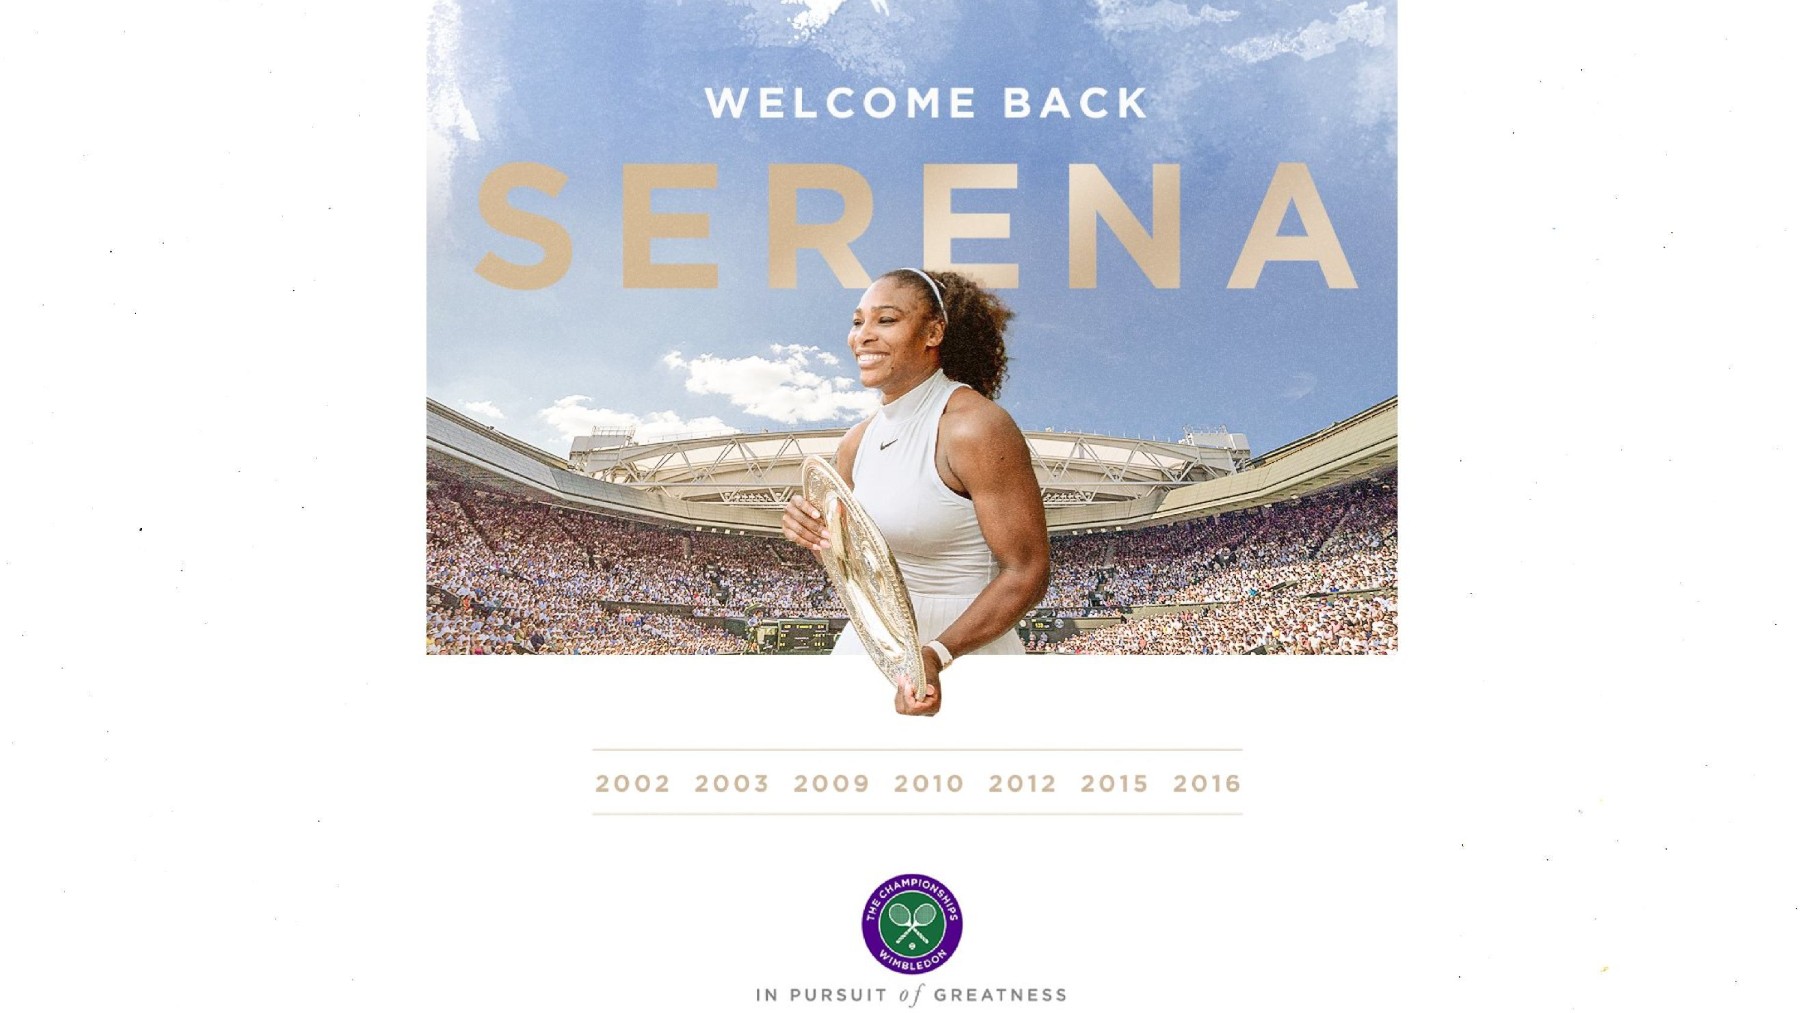 Serena Williams regresa a Wimbledon.